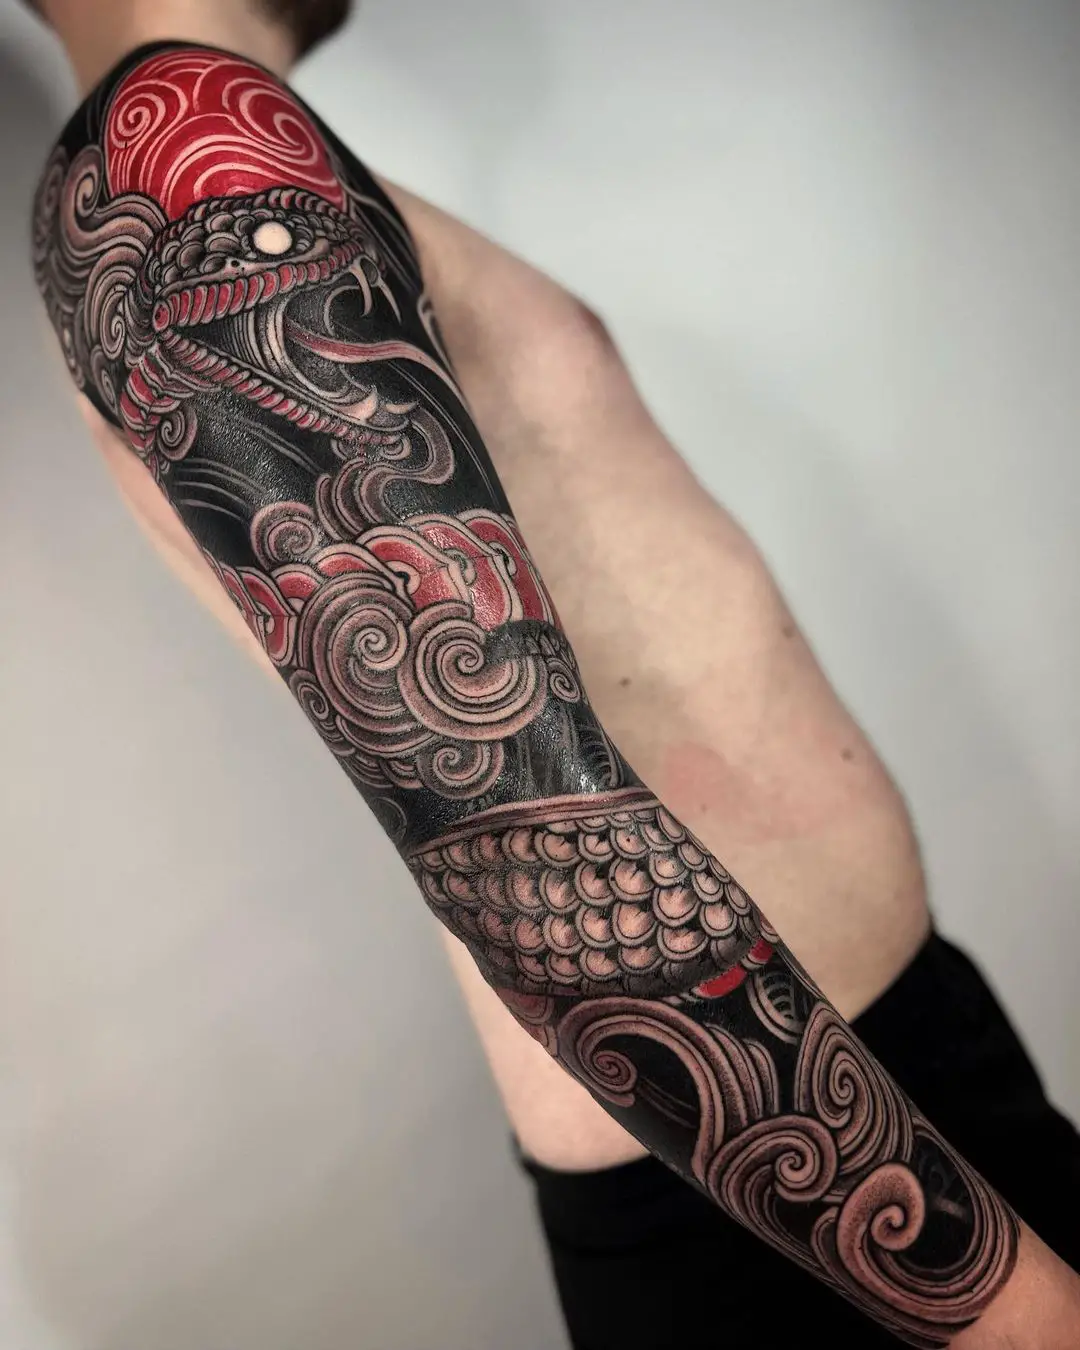 Black snake tattoo by rainmundo ramirez